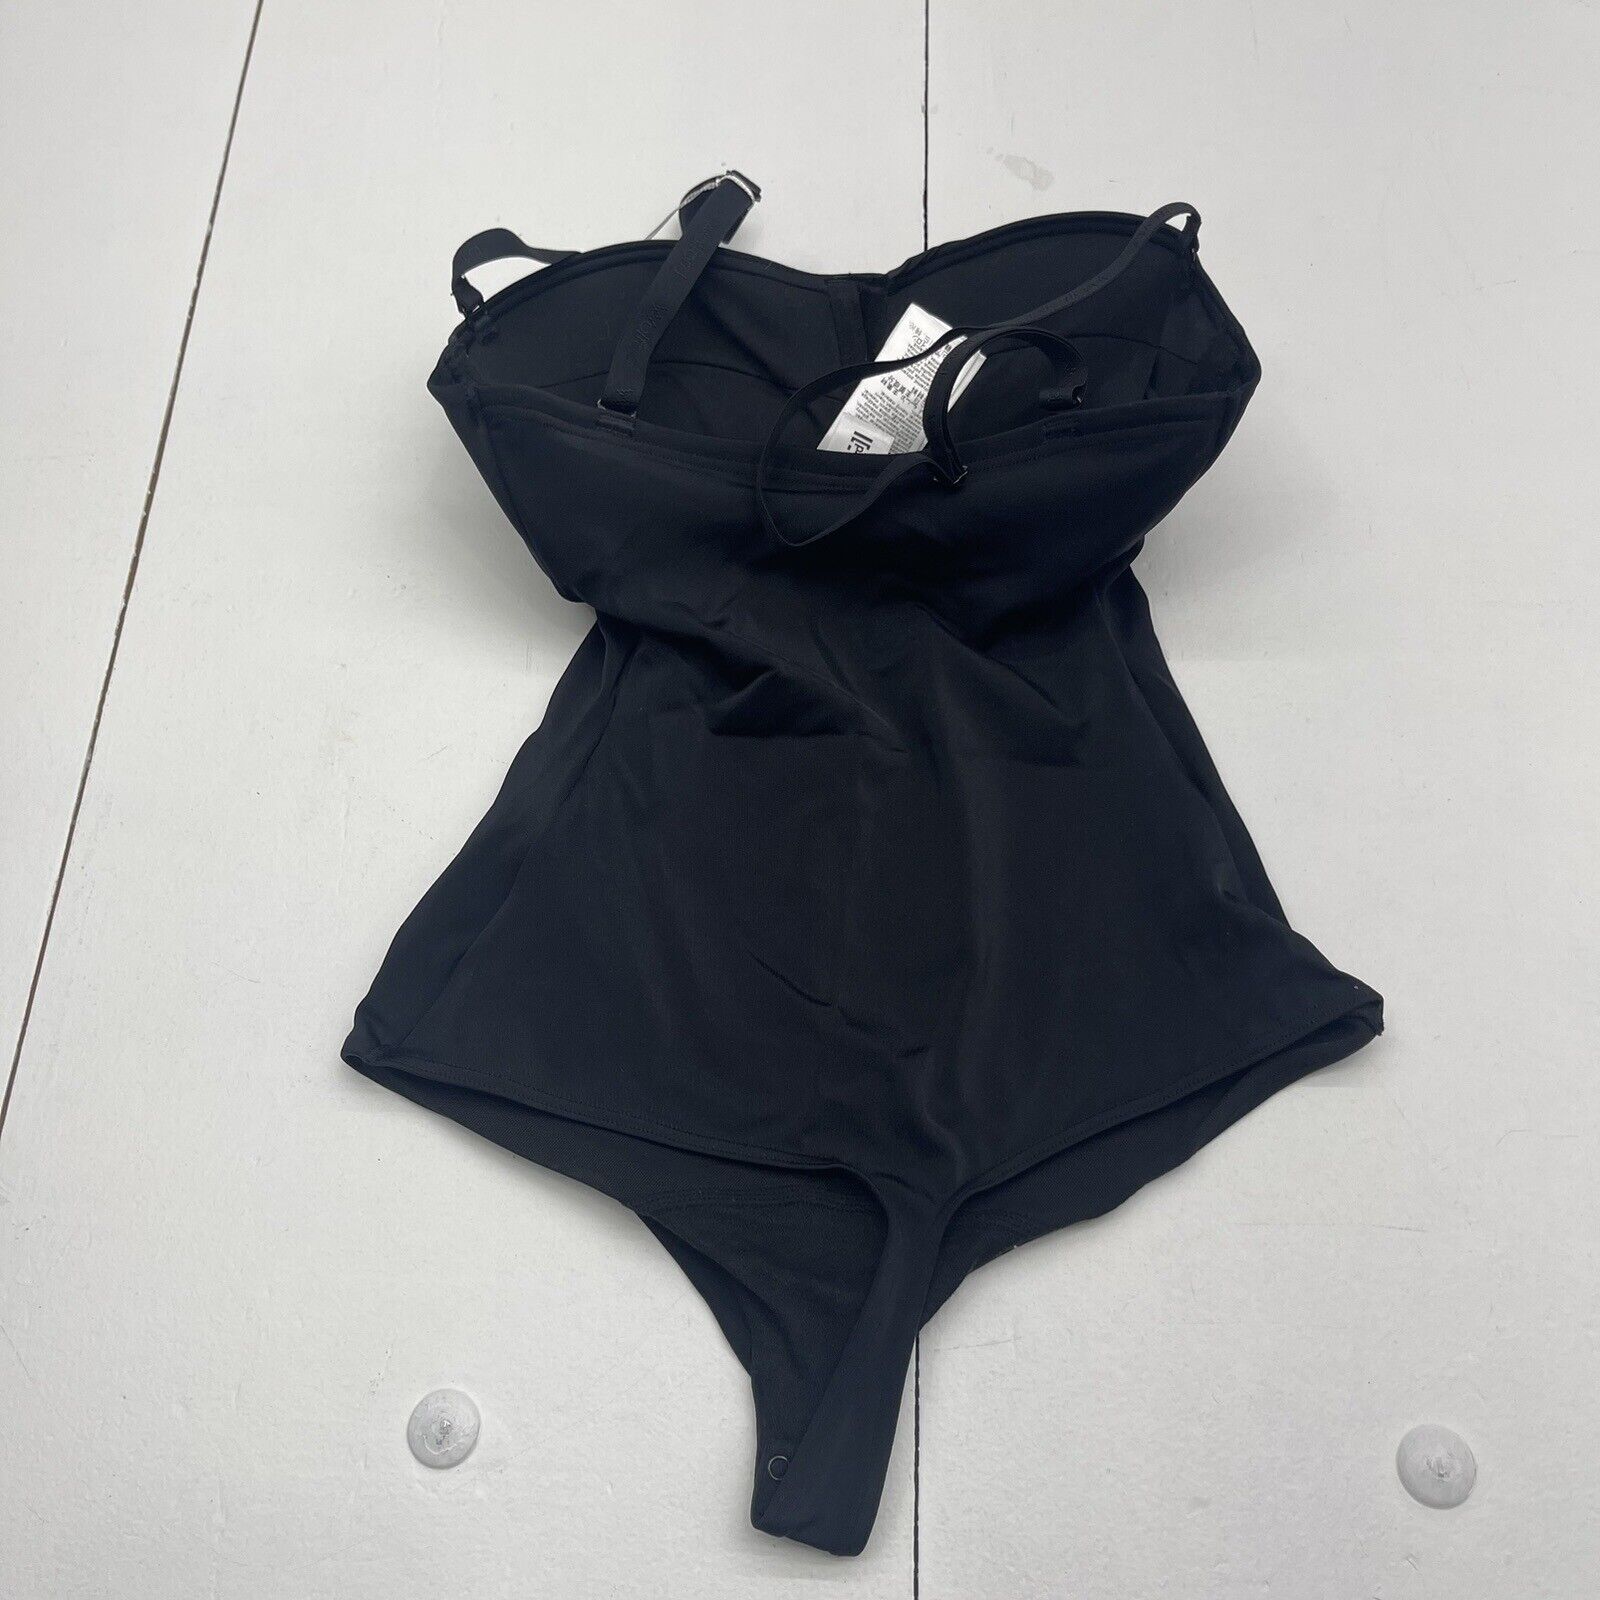 Wolford Mat De Luxe Form Black Bodysuit Shapewear Women's XSC New